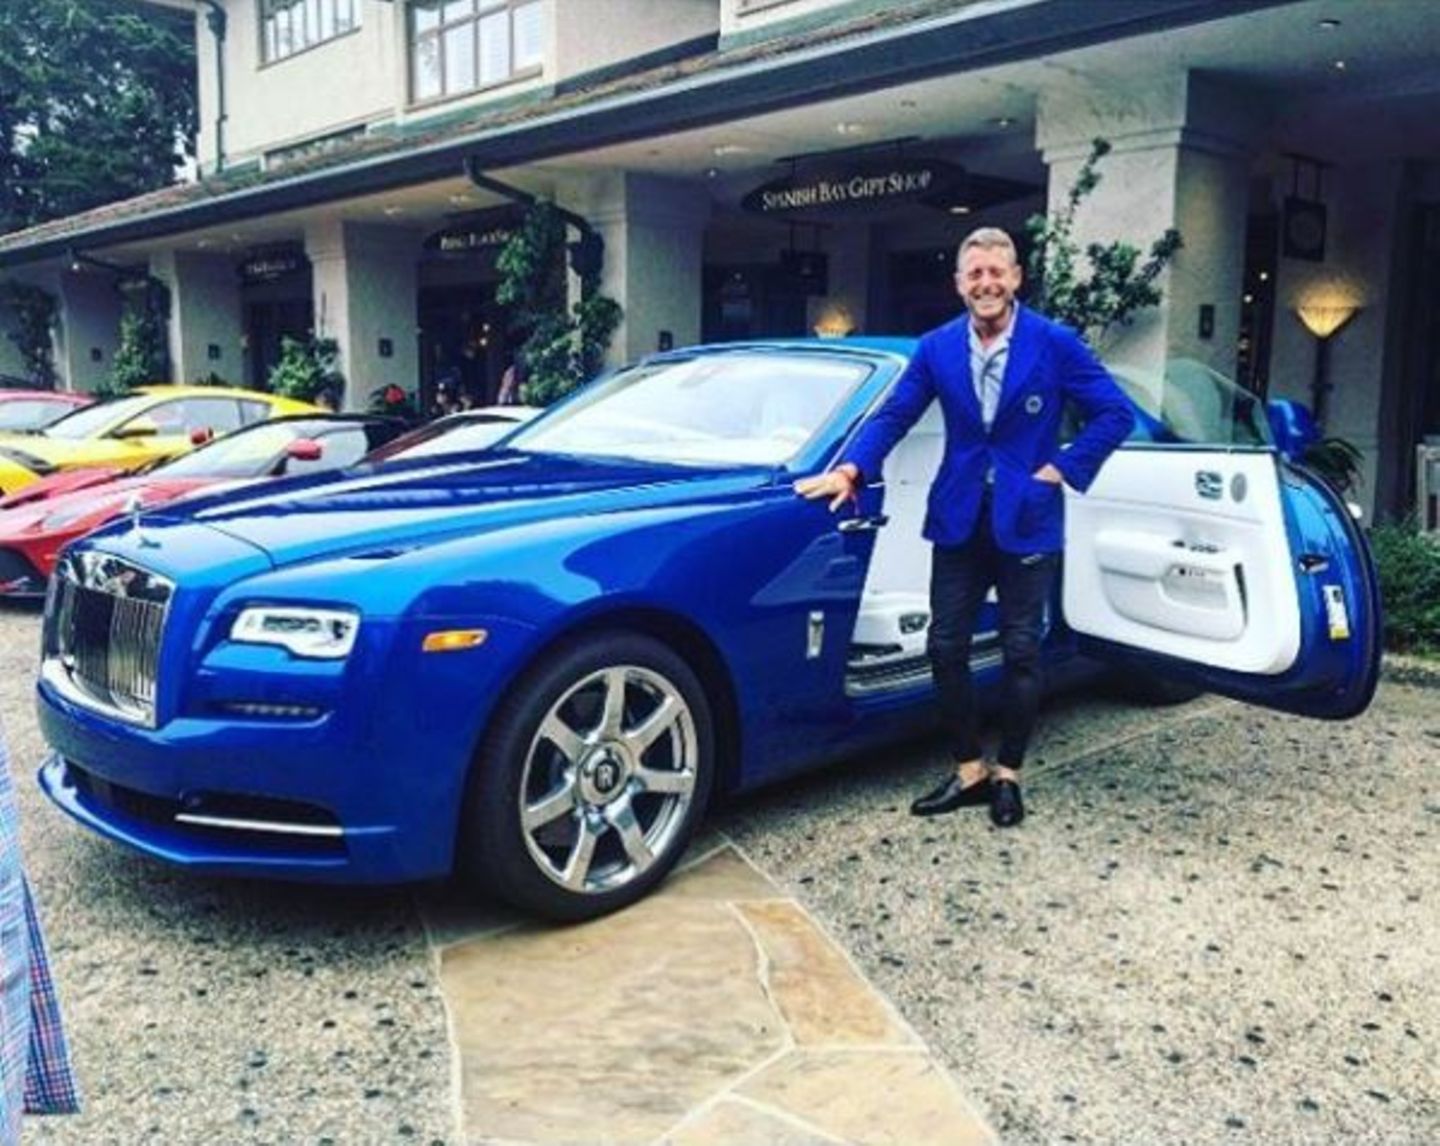 Eine Jacht auf Land: So bezeichnet Lapo Elkann das blaue Luxusungetüm von Rolls-Royce.